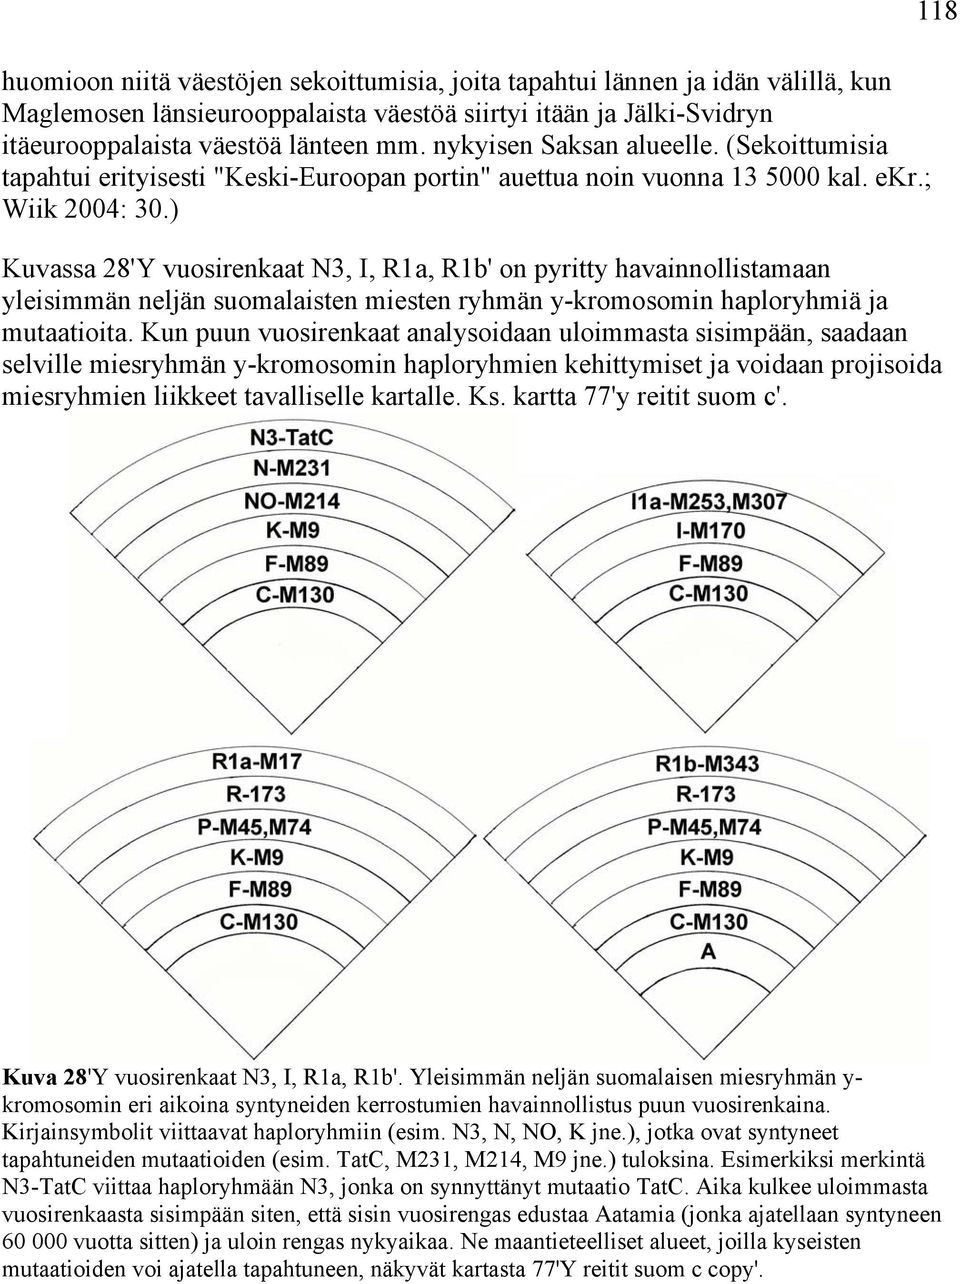 ) Kuvassa 28'Y vuosirenkaat N3, I, R1a, R1b' on pyritty havainnollistamaan yleisimmän neljän suomalaisten miesten ryhmän y-kromosomin haploryhmiä ja mutaatioita.